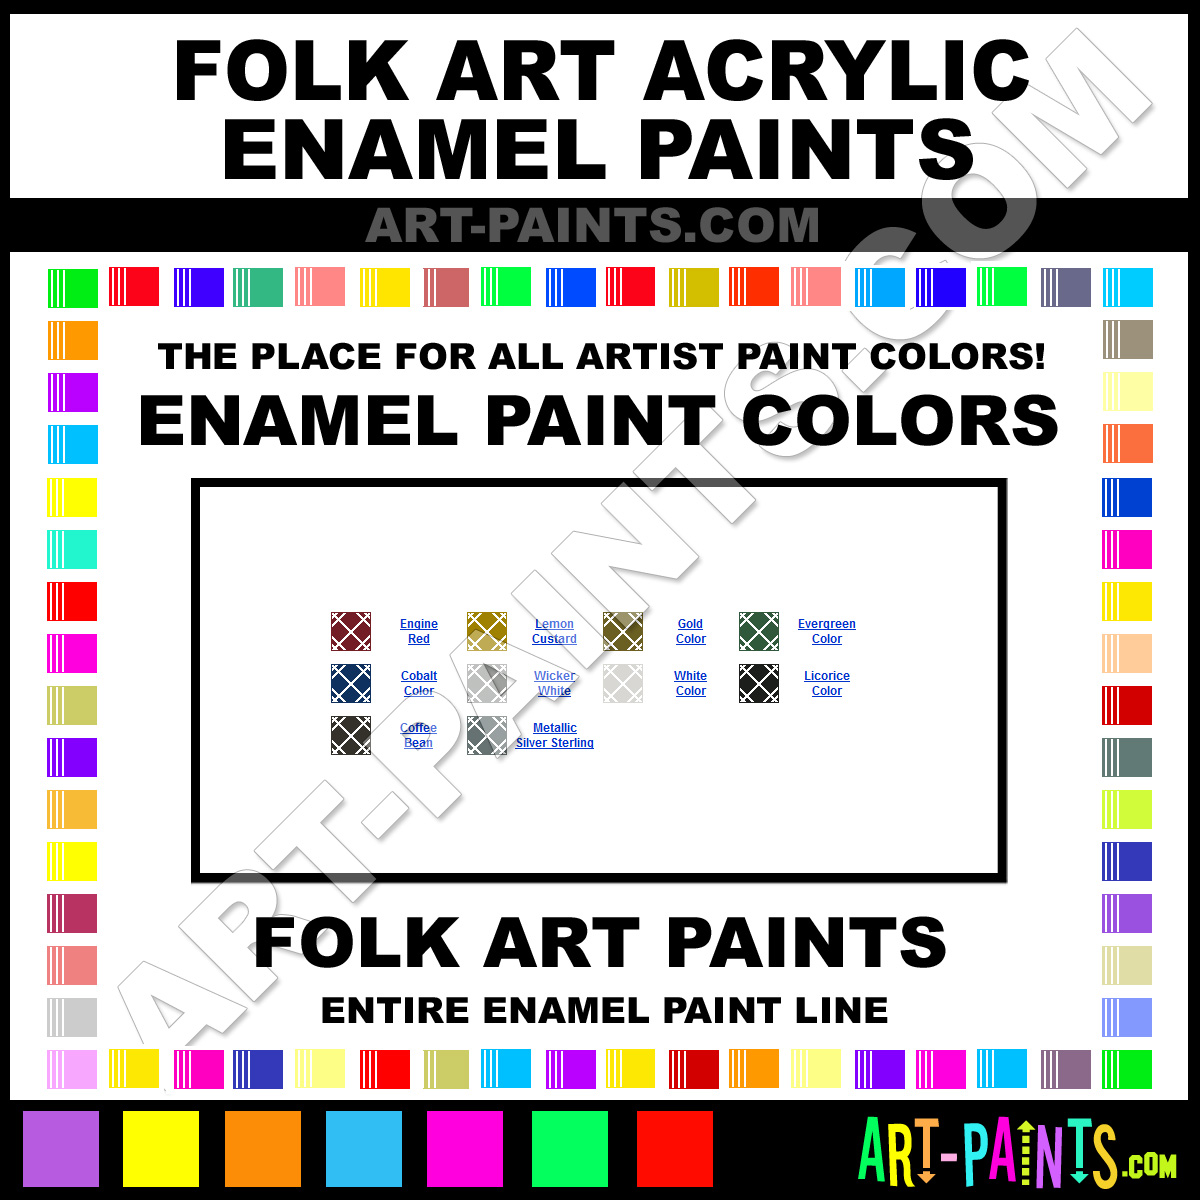 Folk Art Acrylic Enamel Paint Colors - Folk Art Acrylic Paint Colors,  Acrylic Color, Acrylic Enamels, Folk Art Acrylic Paint line! 